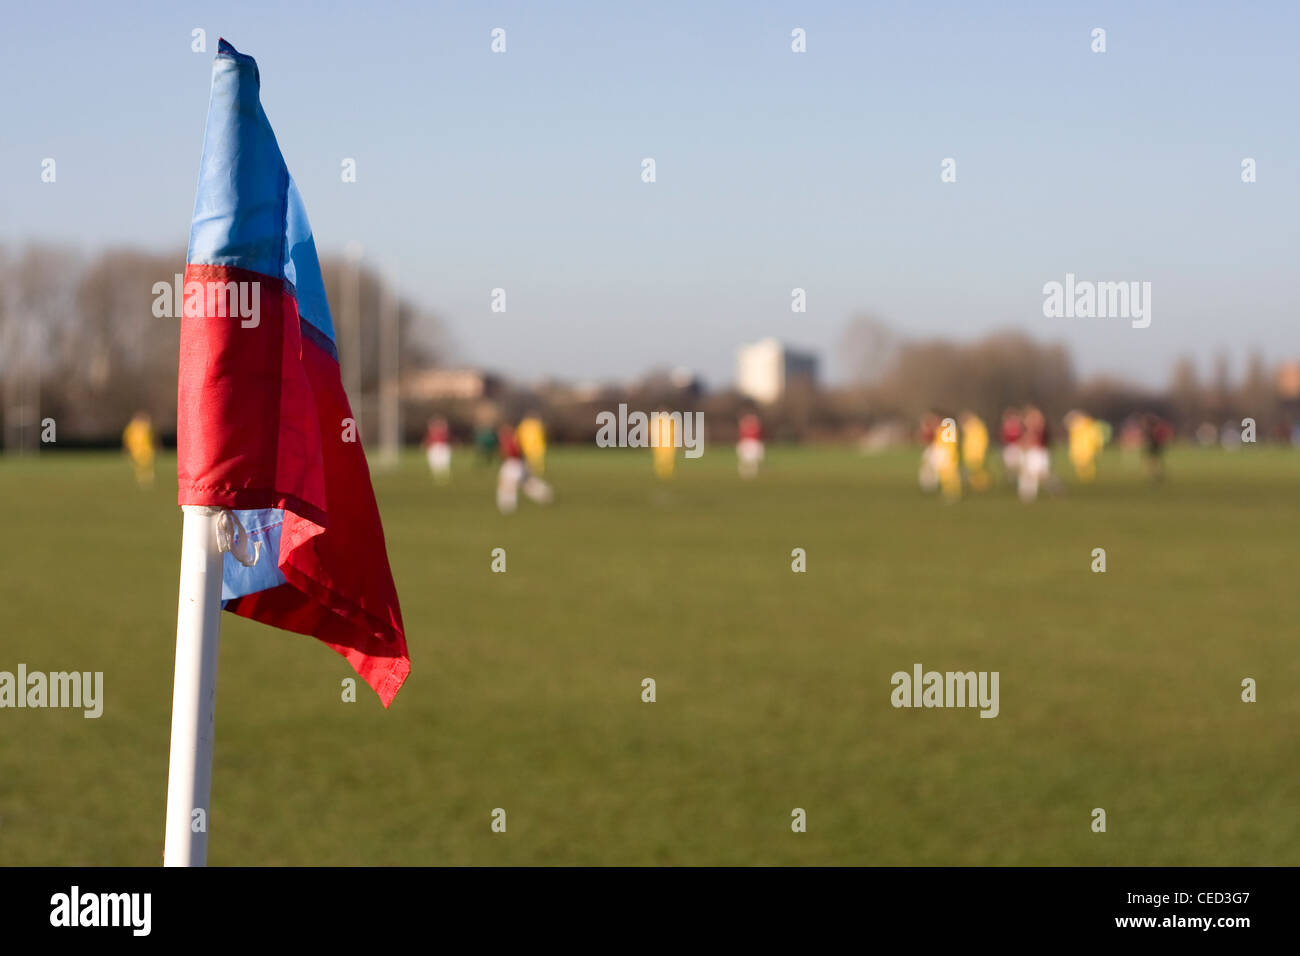 Il calcio partita di calcio con il blu e il rosso montante con bandiera, due squadre la riproduzione in background di paludi Hackney, Londra Foto Stock